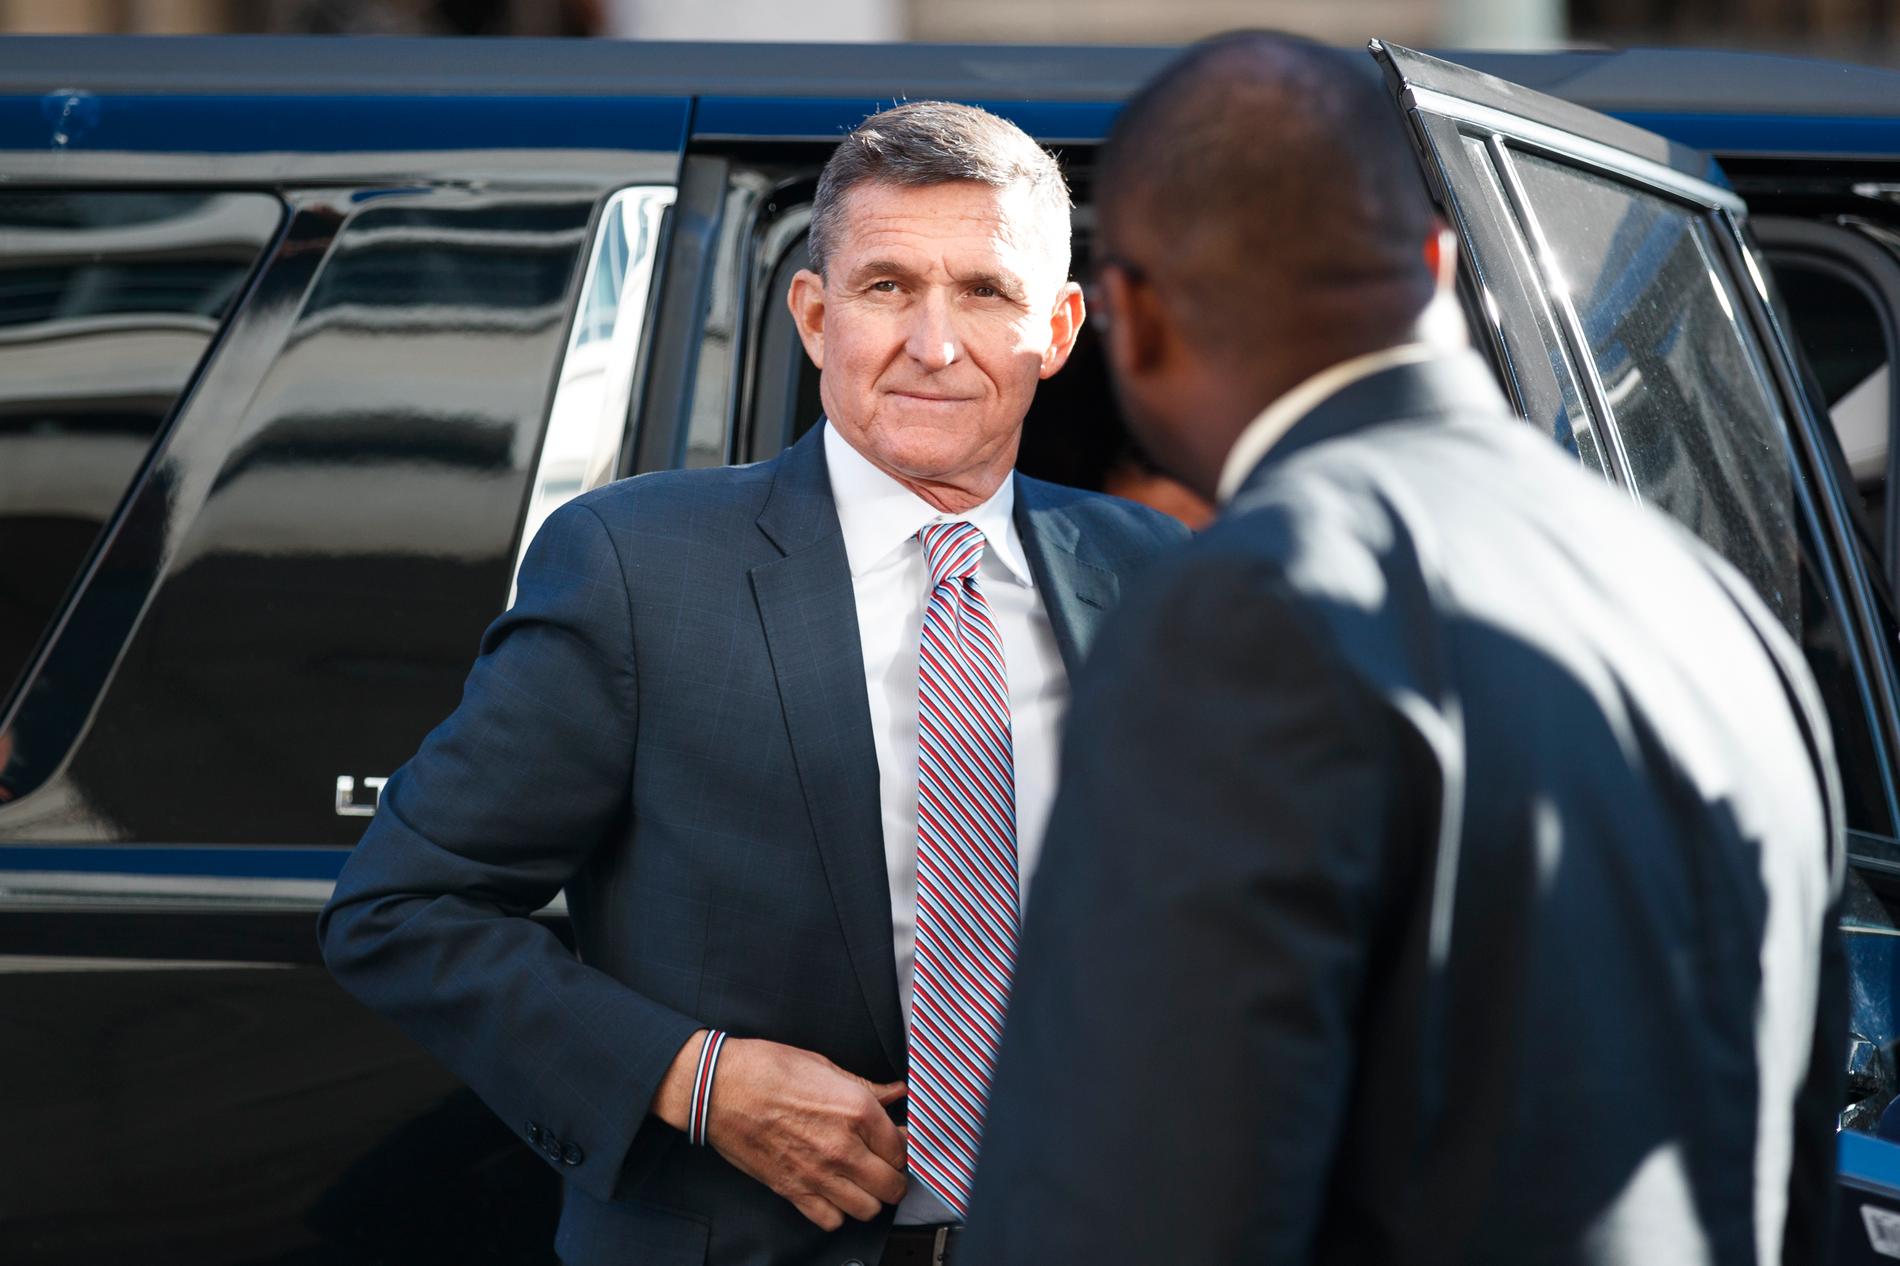 President Donald Trumps skandalomsusade förste nationelle säkerhetsrådgivare Michael Flynn. Flynn kom sedermera att åtalas inom ramen för den särskilde åklagaren Robert Muellers så kallade Rysslandsutredning.